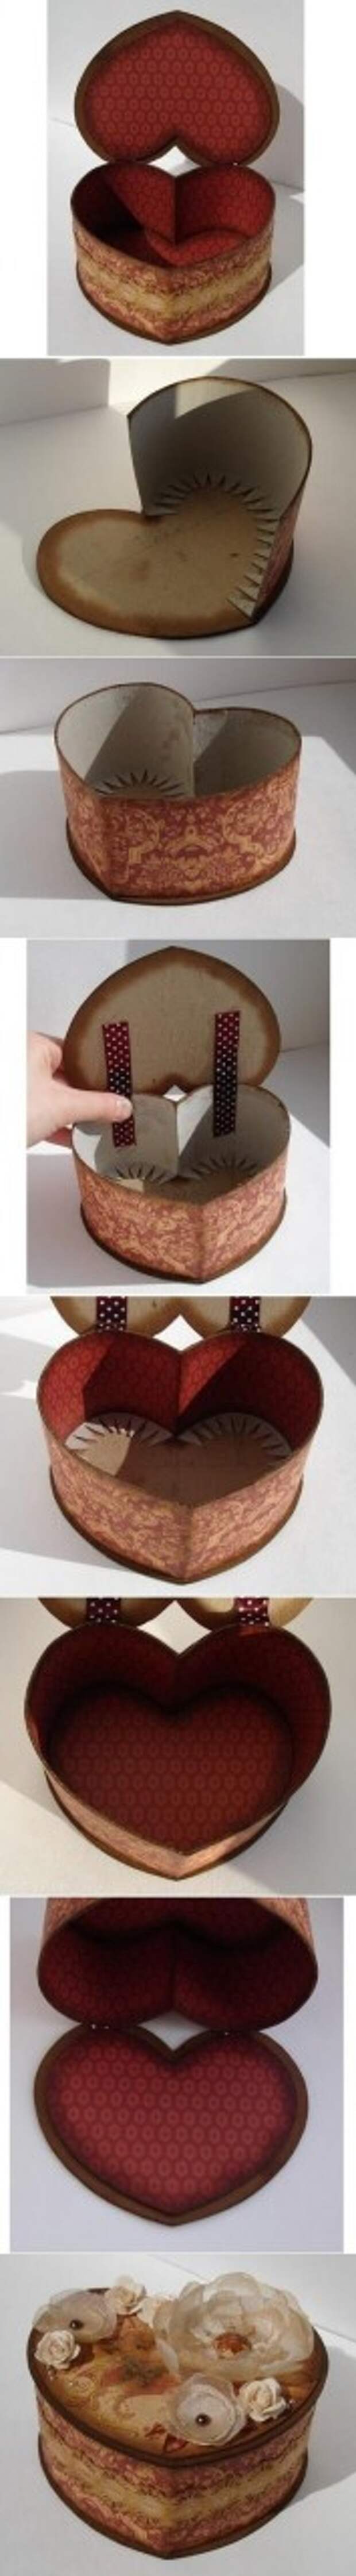 DIY Cardboard Heart Shaped Box: 